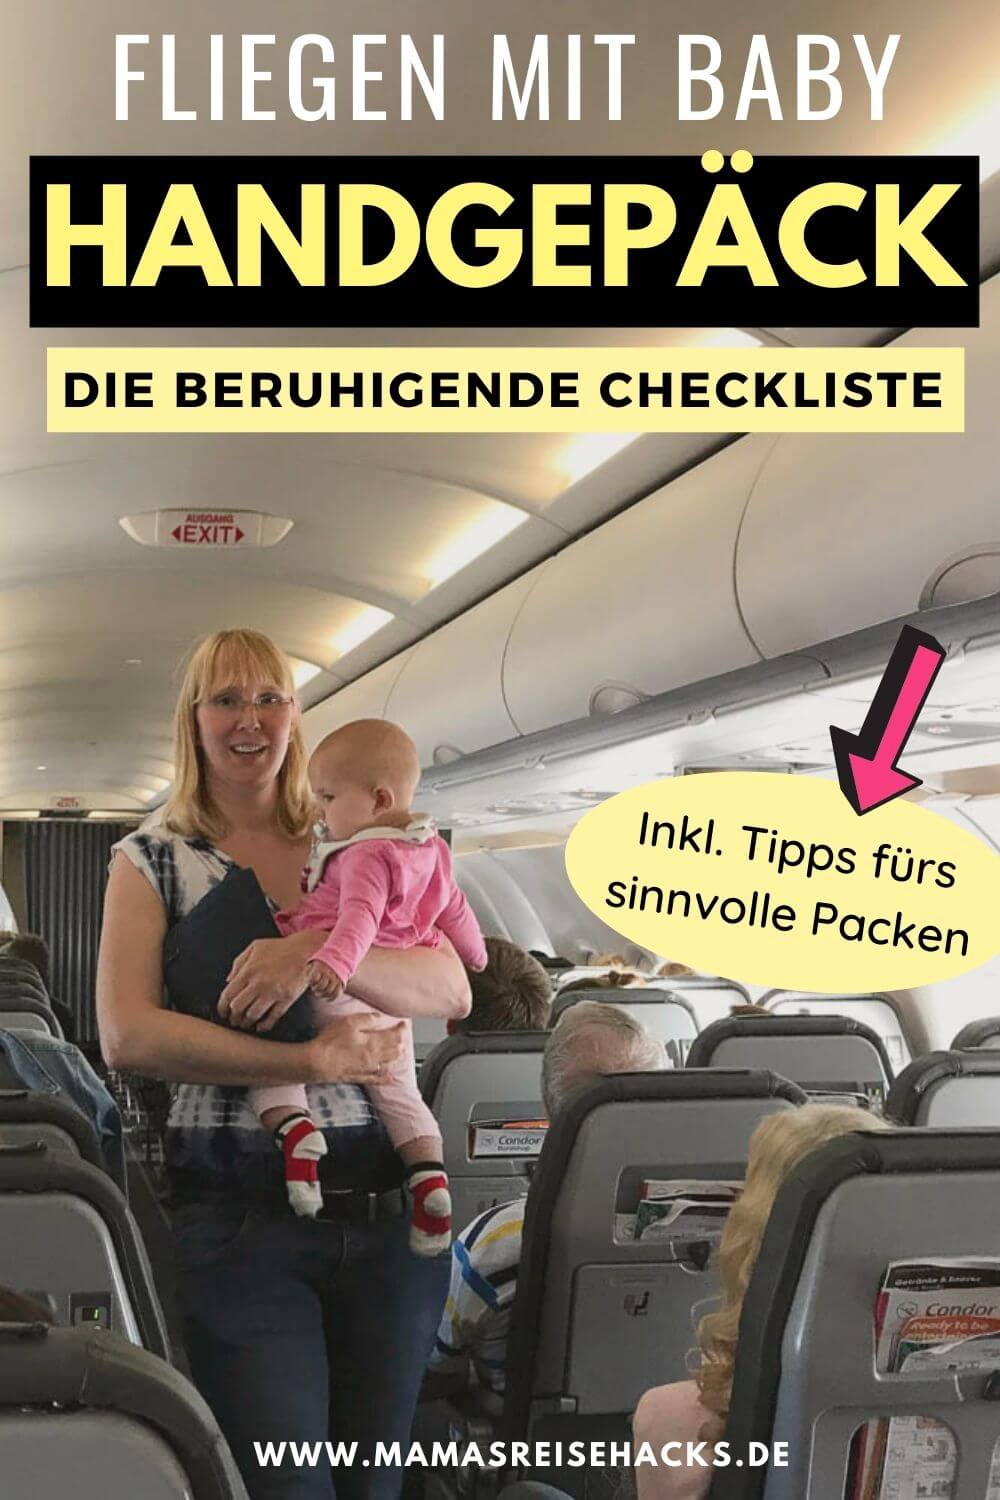 Fliegen mit Baby - die Beruhigende Checkliste fürs Handgepäck